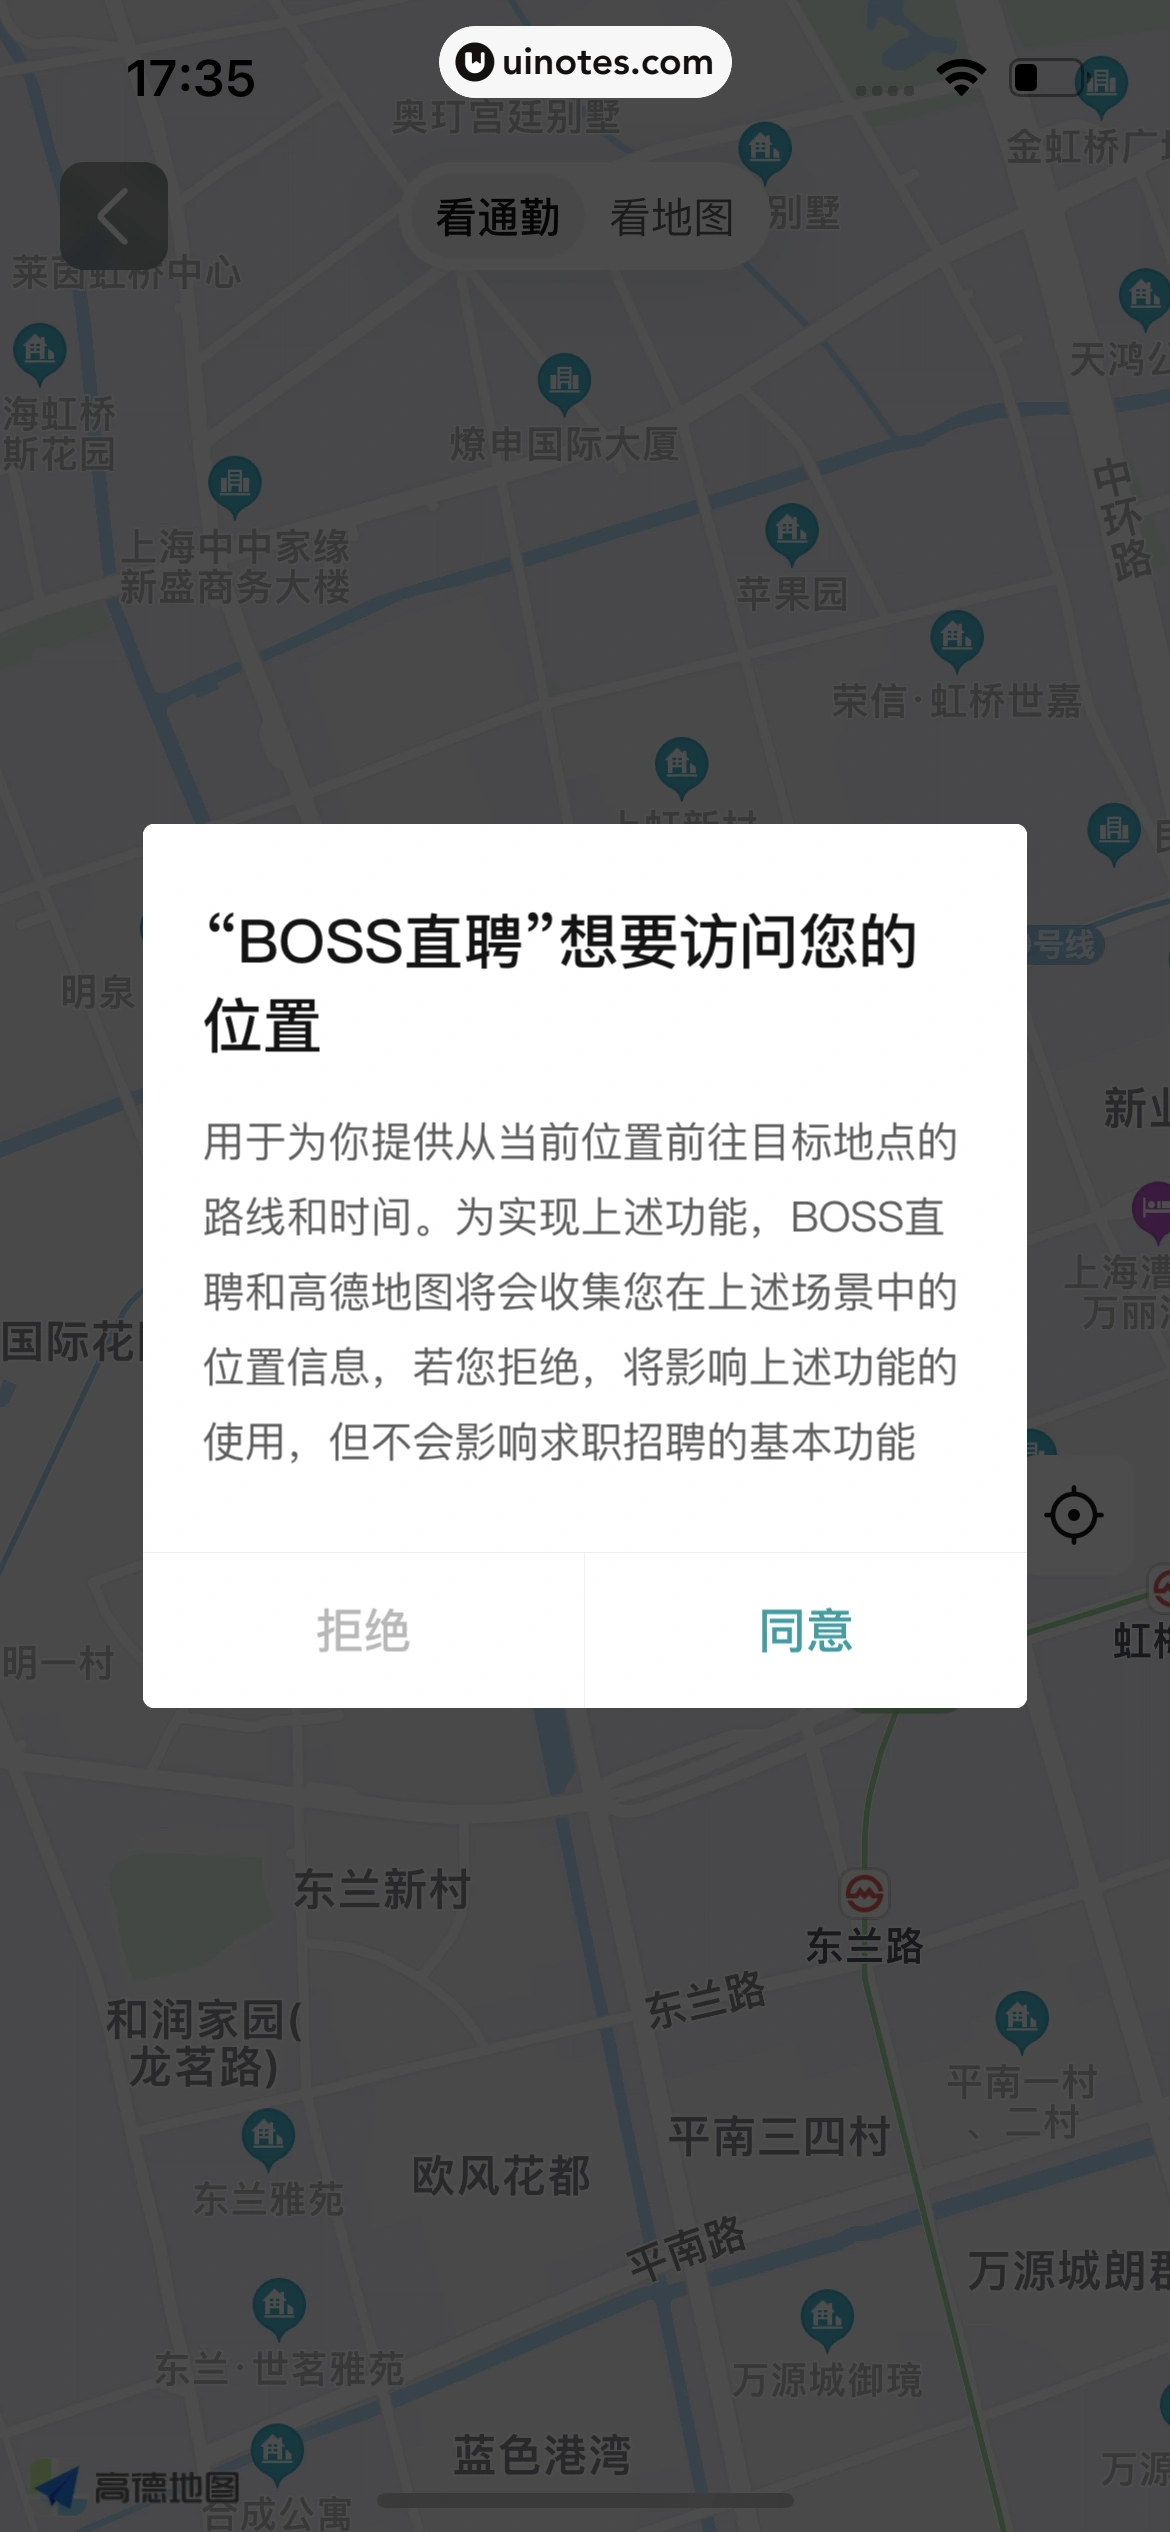 BOSS直聘 App 截图 084 - UI Notes